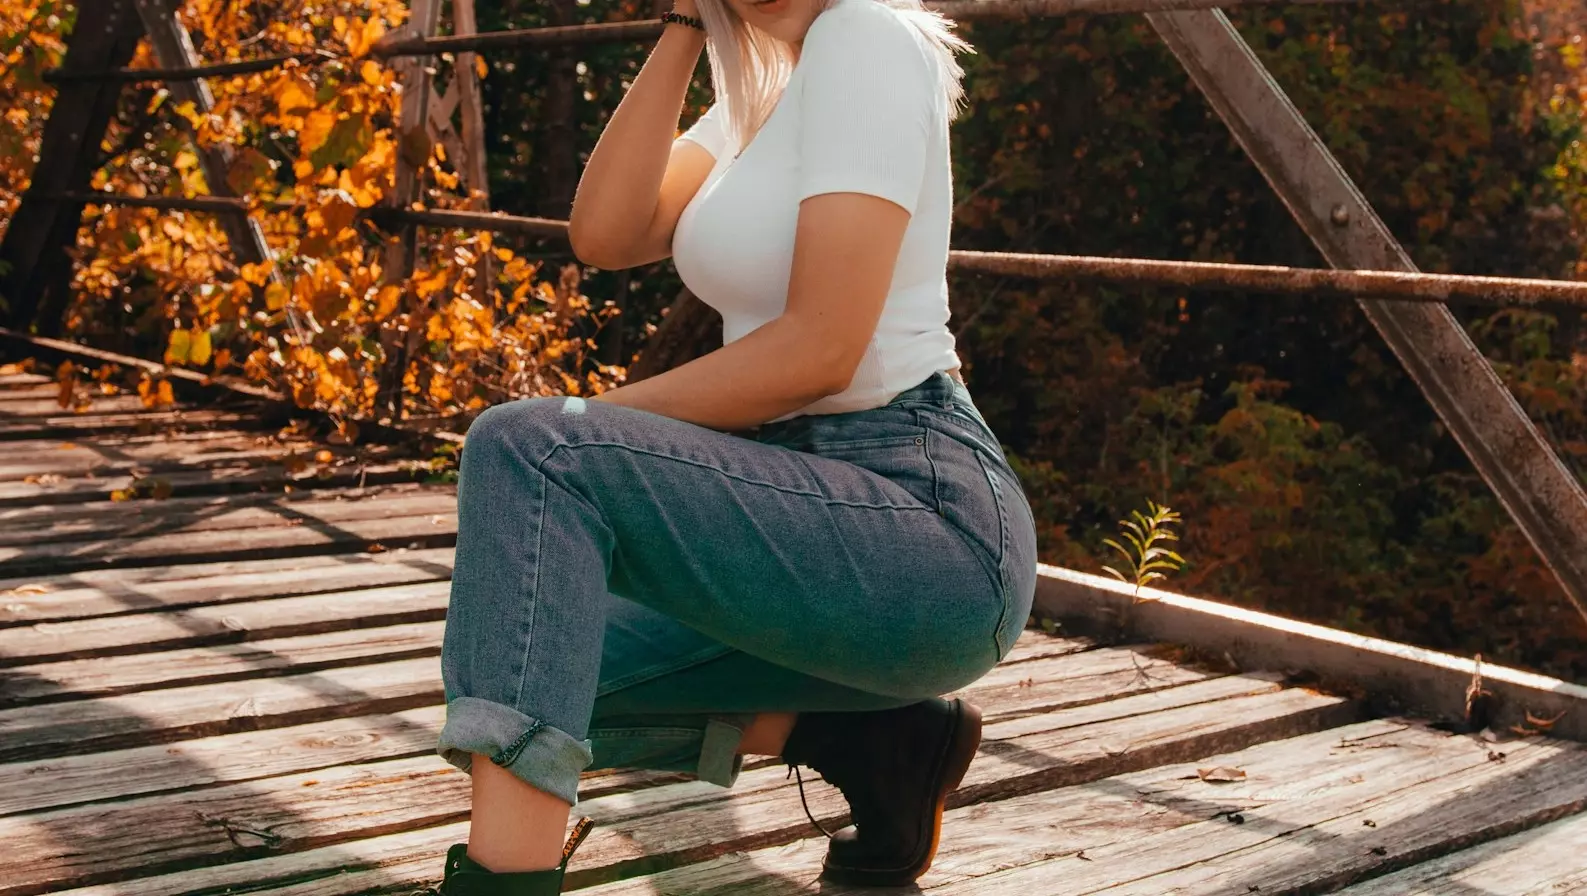 Ирина Шейк стала лицом новой рекламной кампании ростовского бренда Gloria Jeans